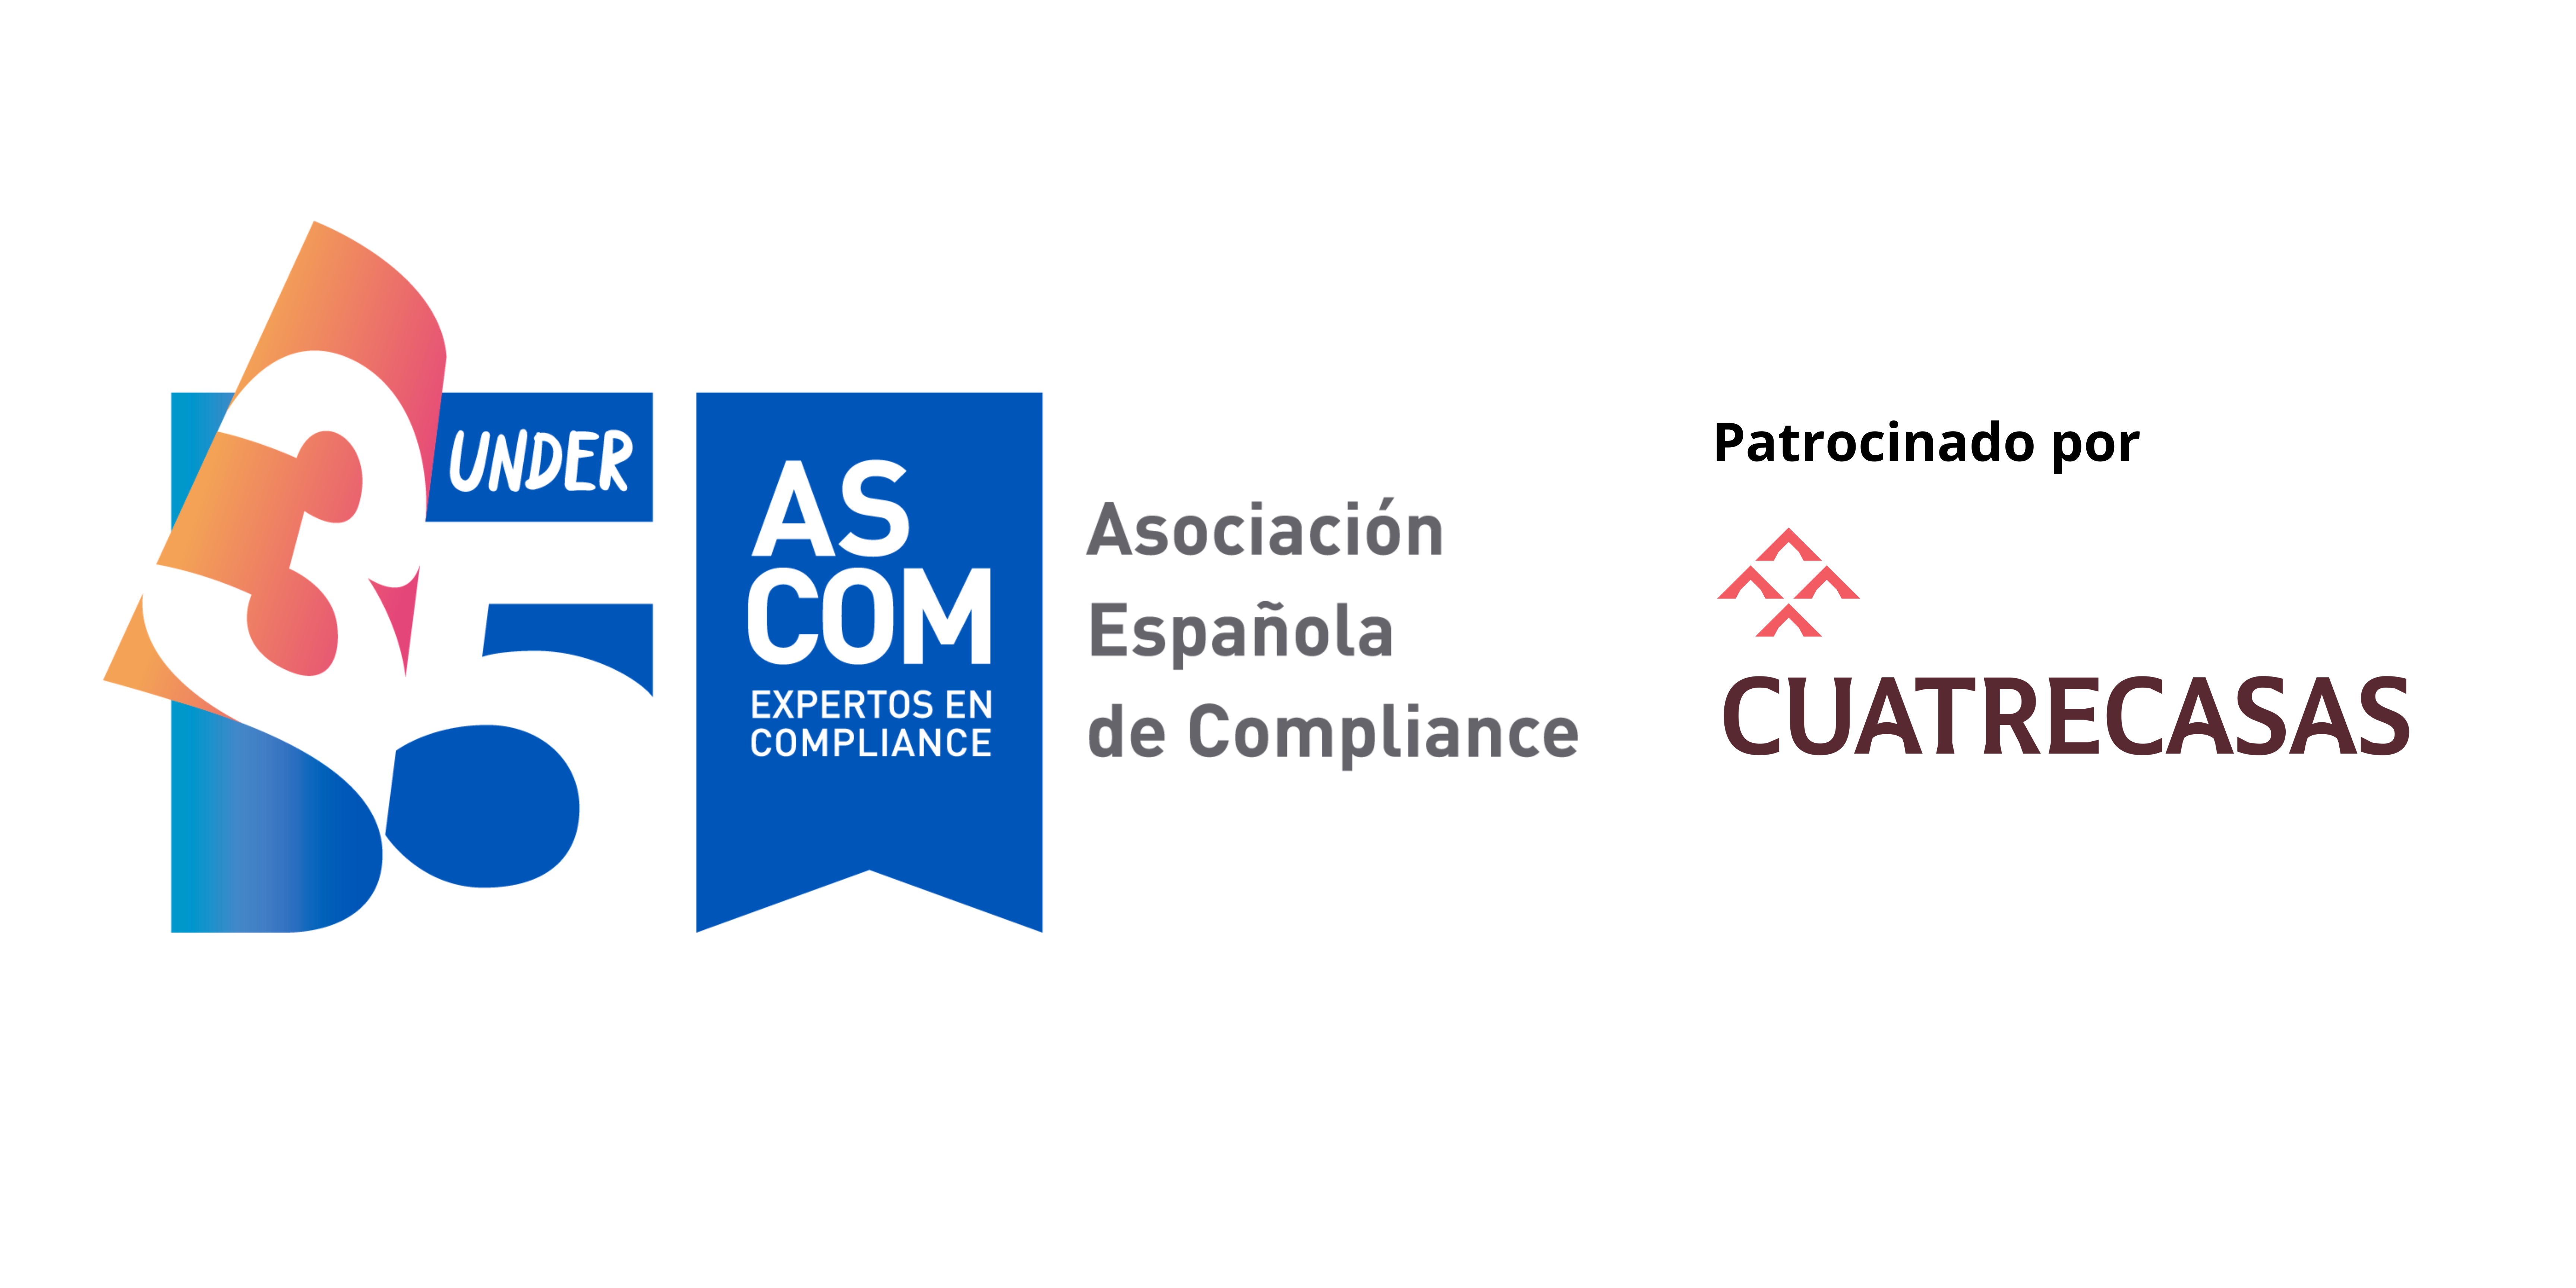 Under 35 Asociación Compliance